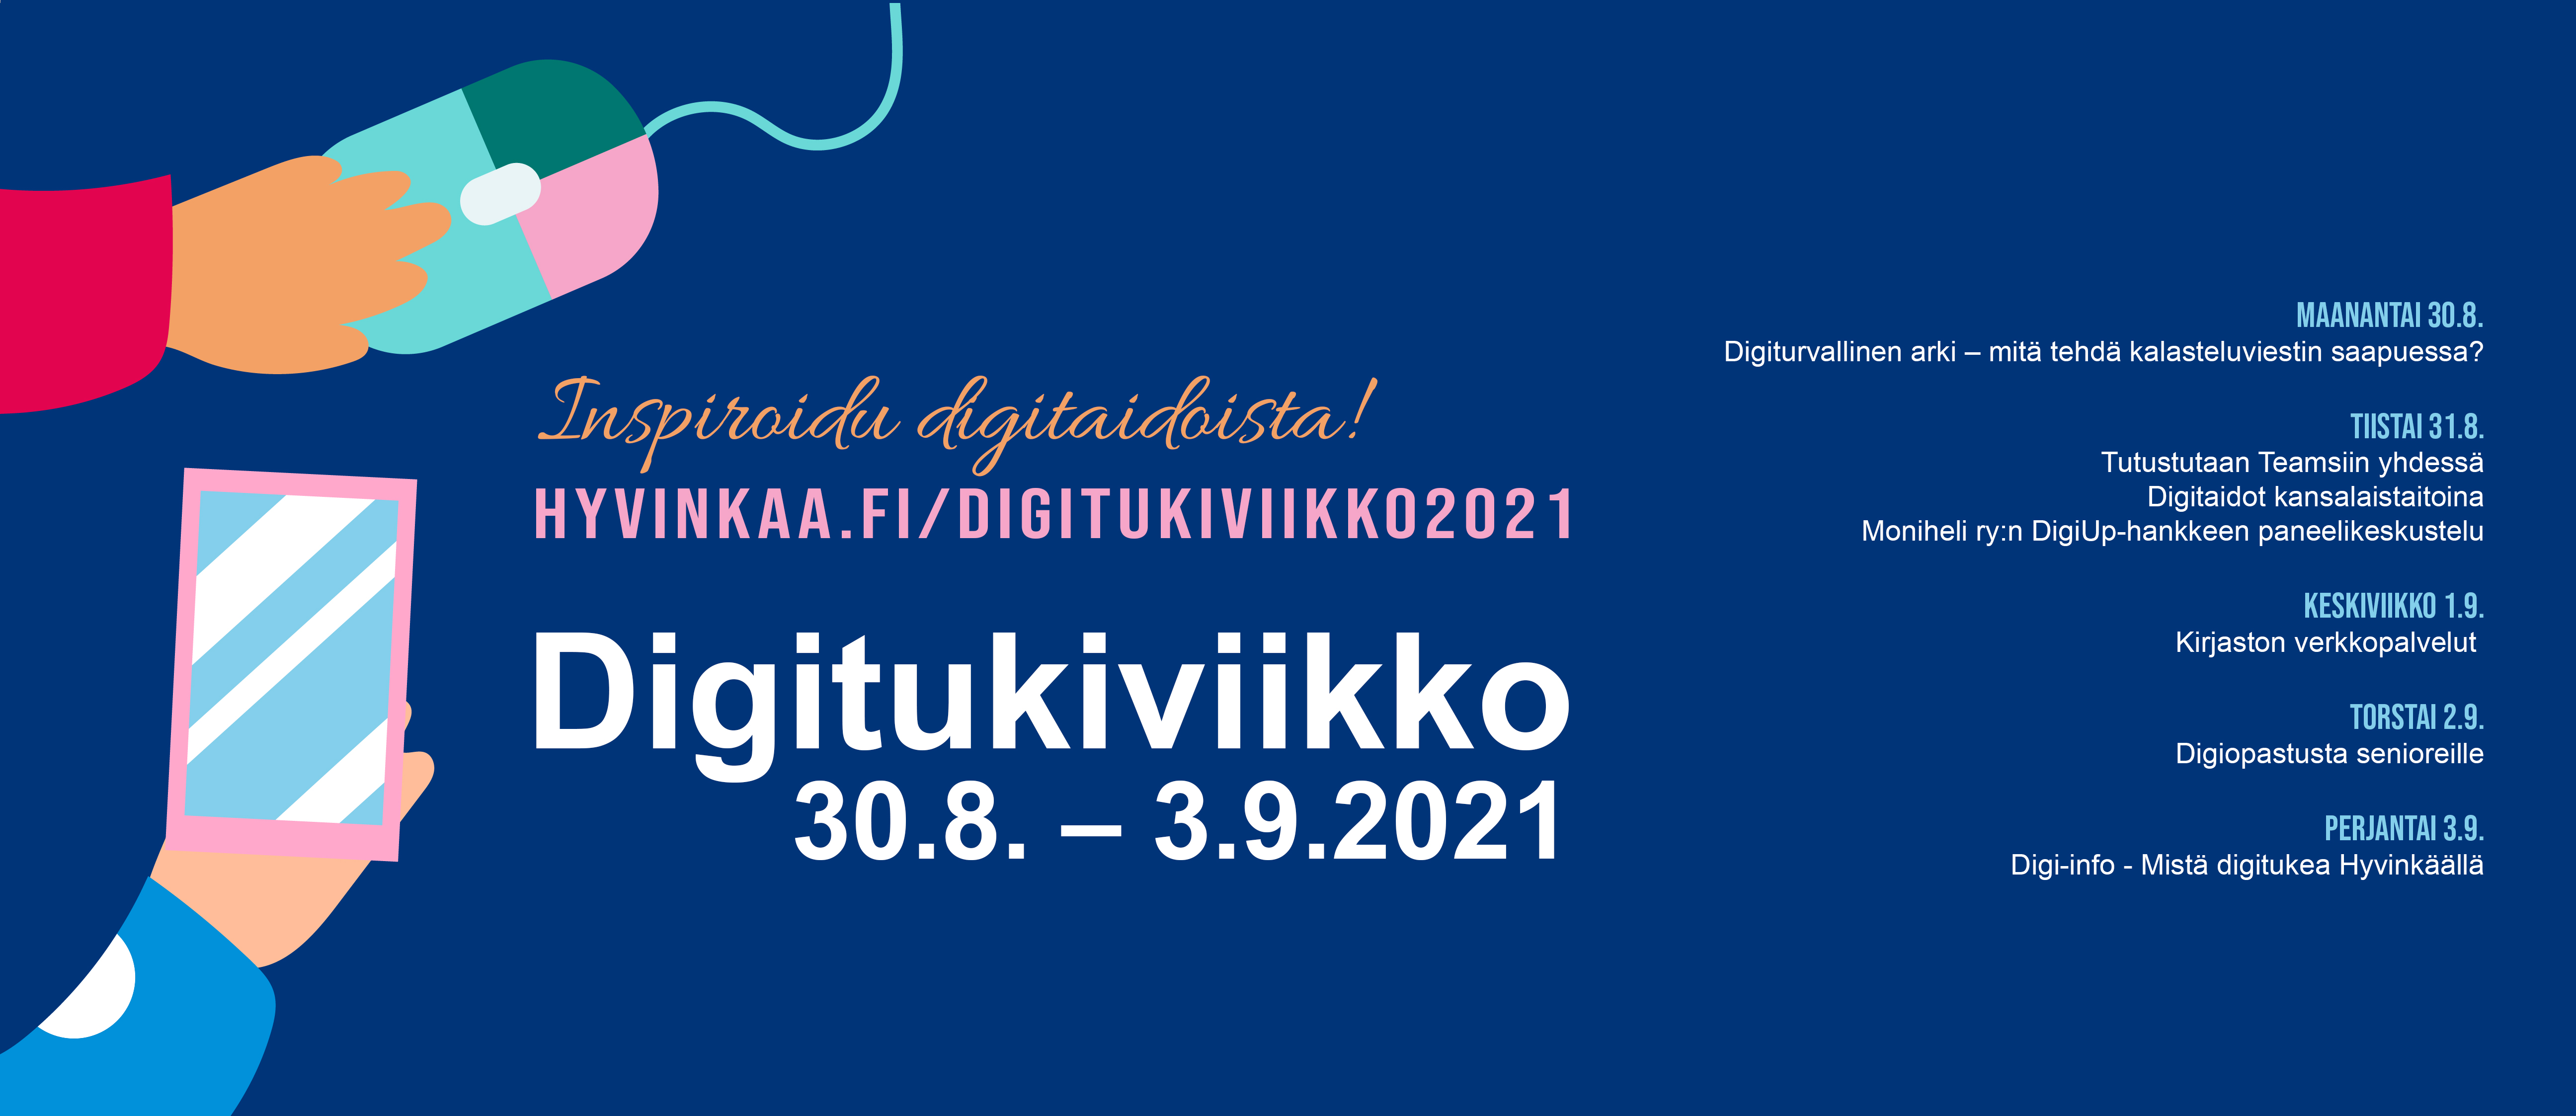 Digitukiaiheinen mainoskuva, jossa kerrotaan, että digiviikkoa vietetään 30.8.-3.9.2021